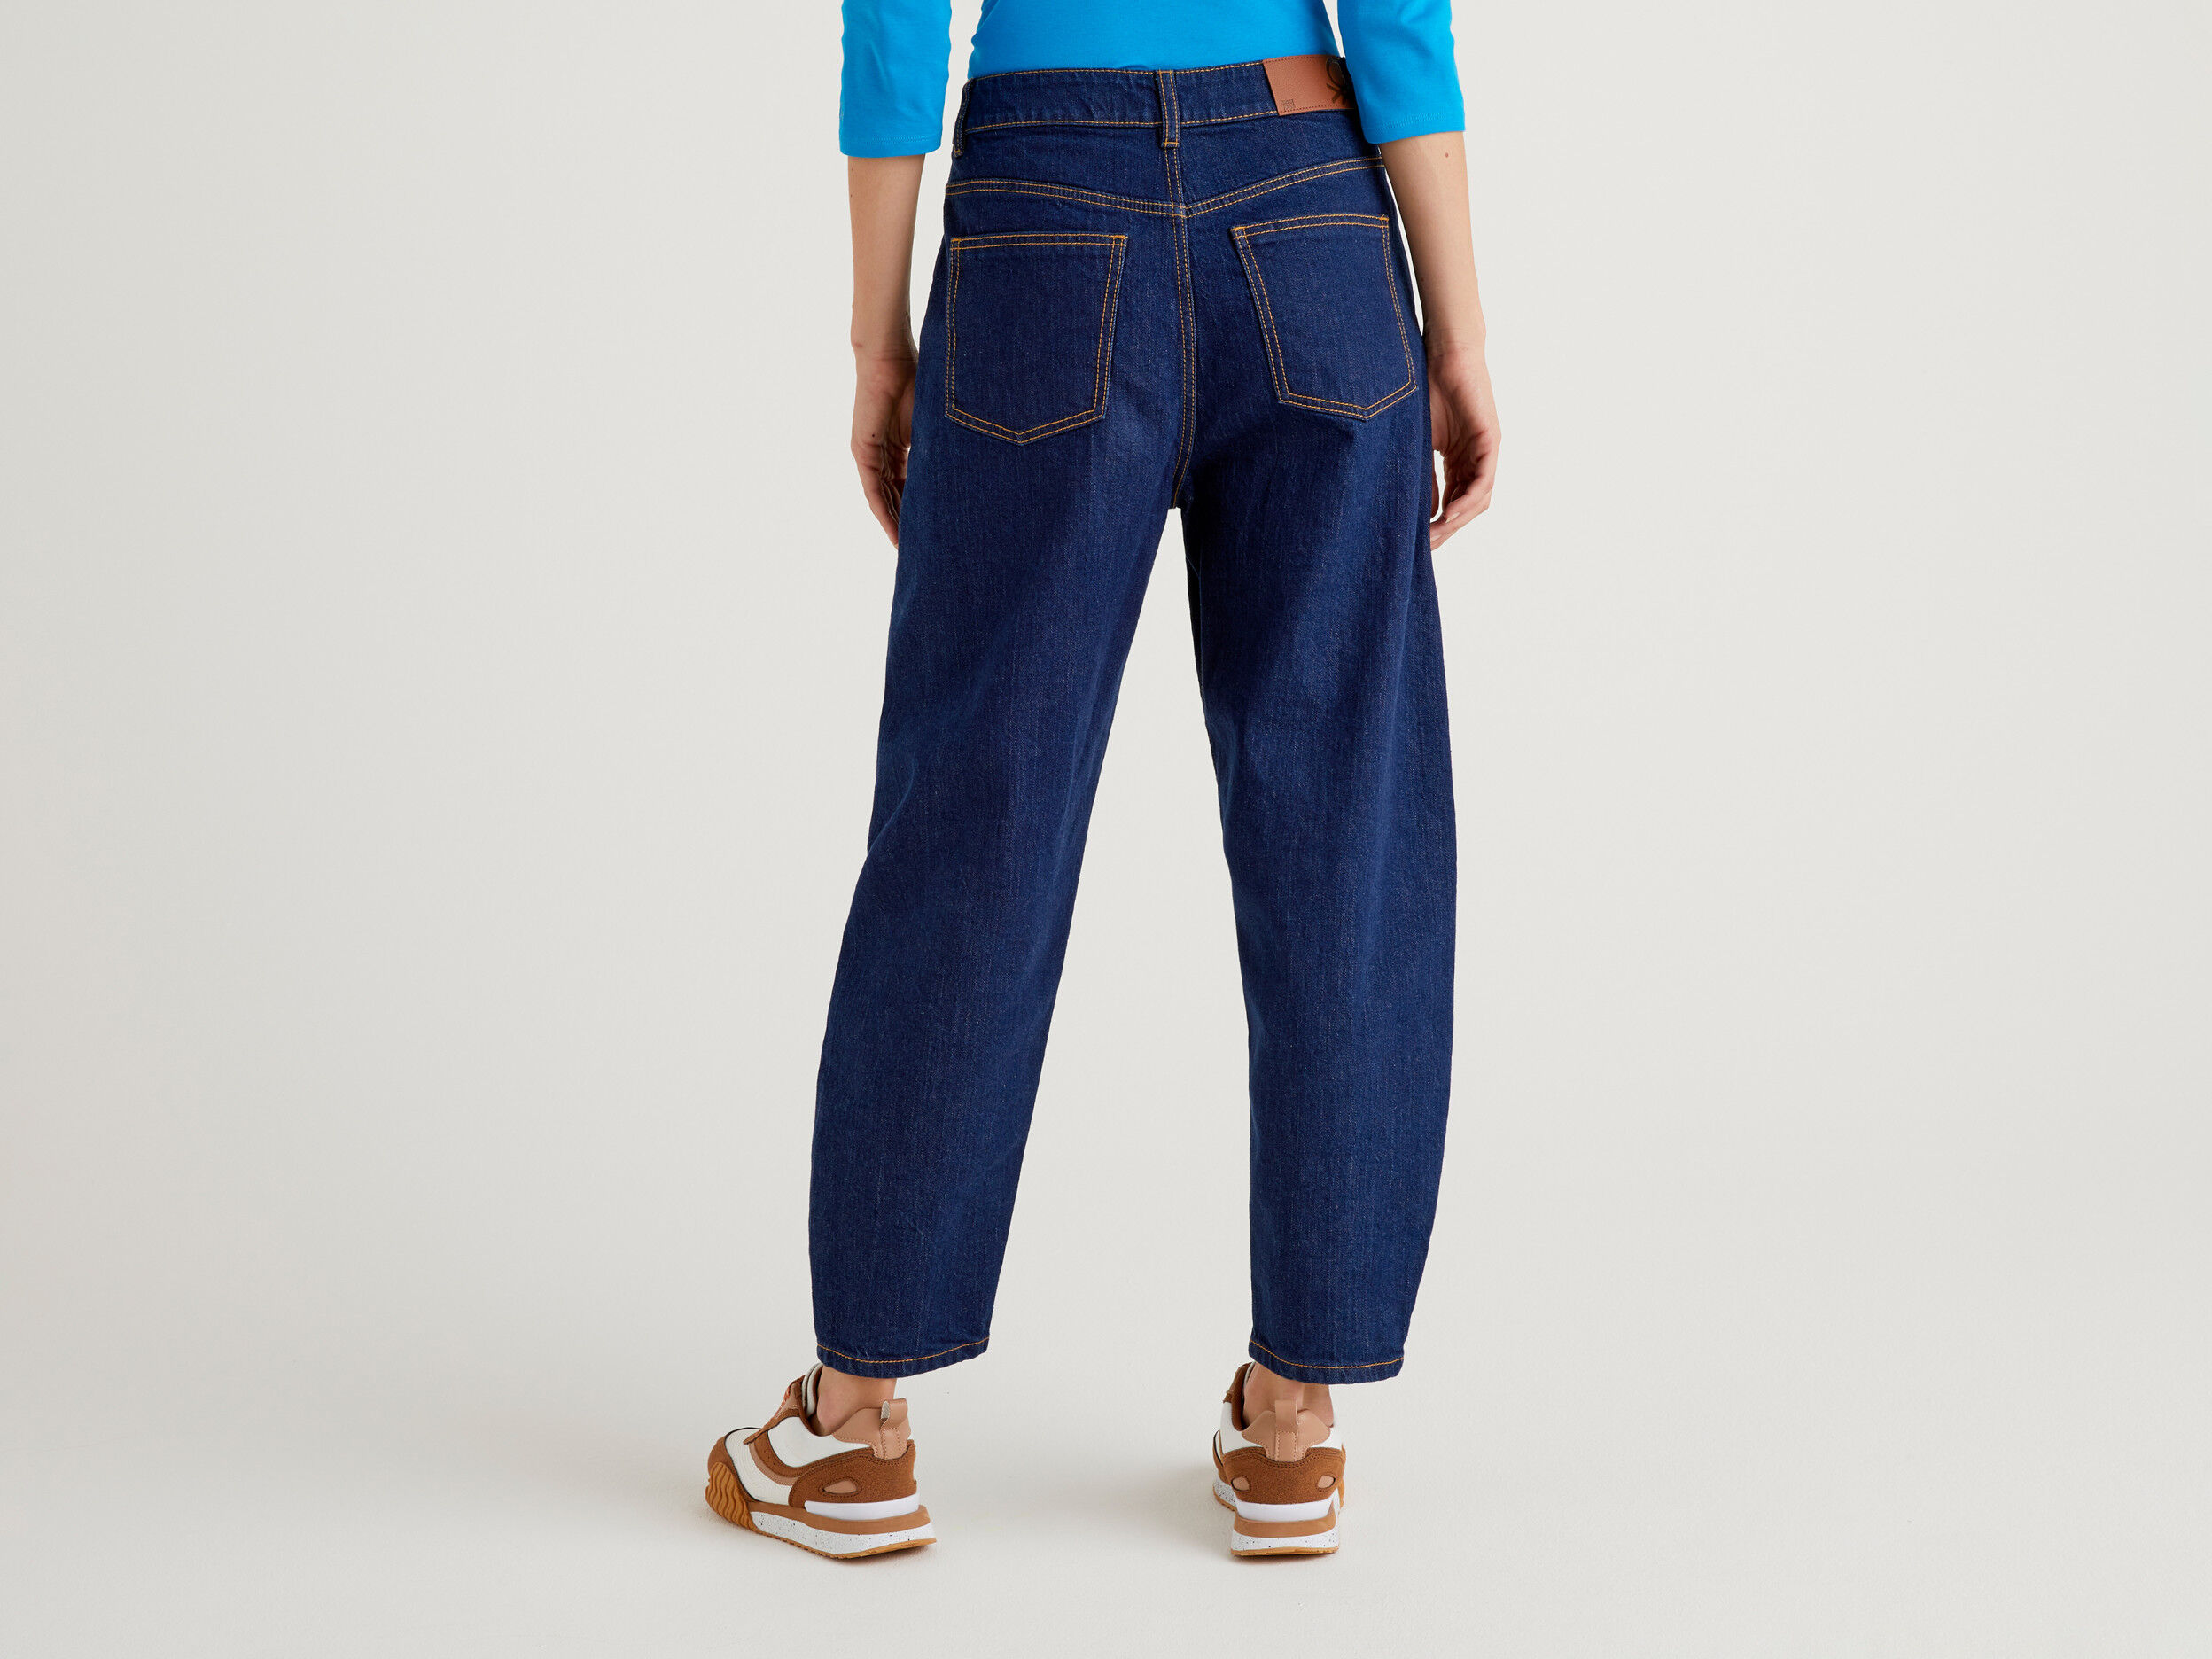 Jeans Straight Leg 100% Cotone United Colors of Benetton Uomo Abbigliamento Pantaloni e jeans Jeans Jeans straight 